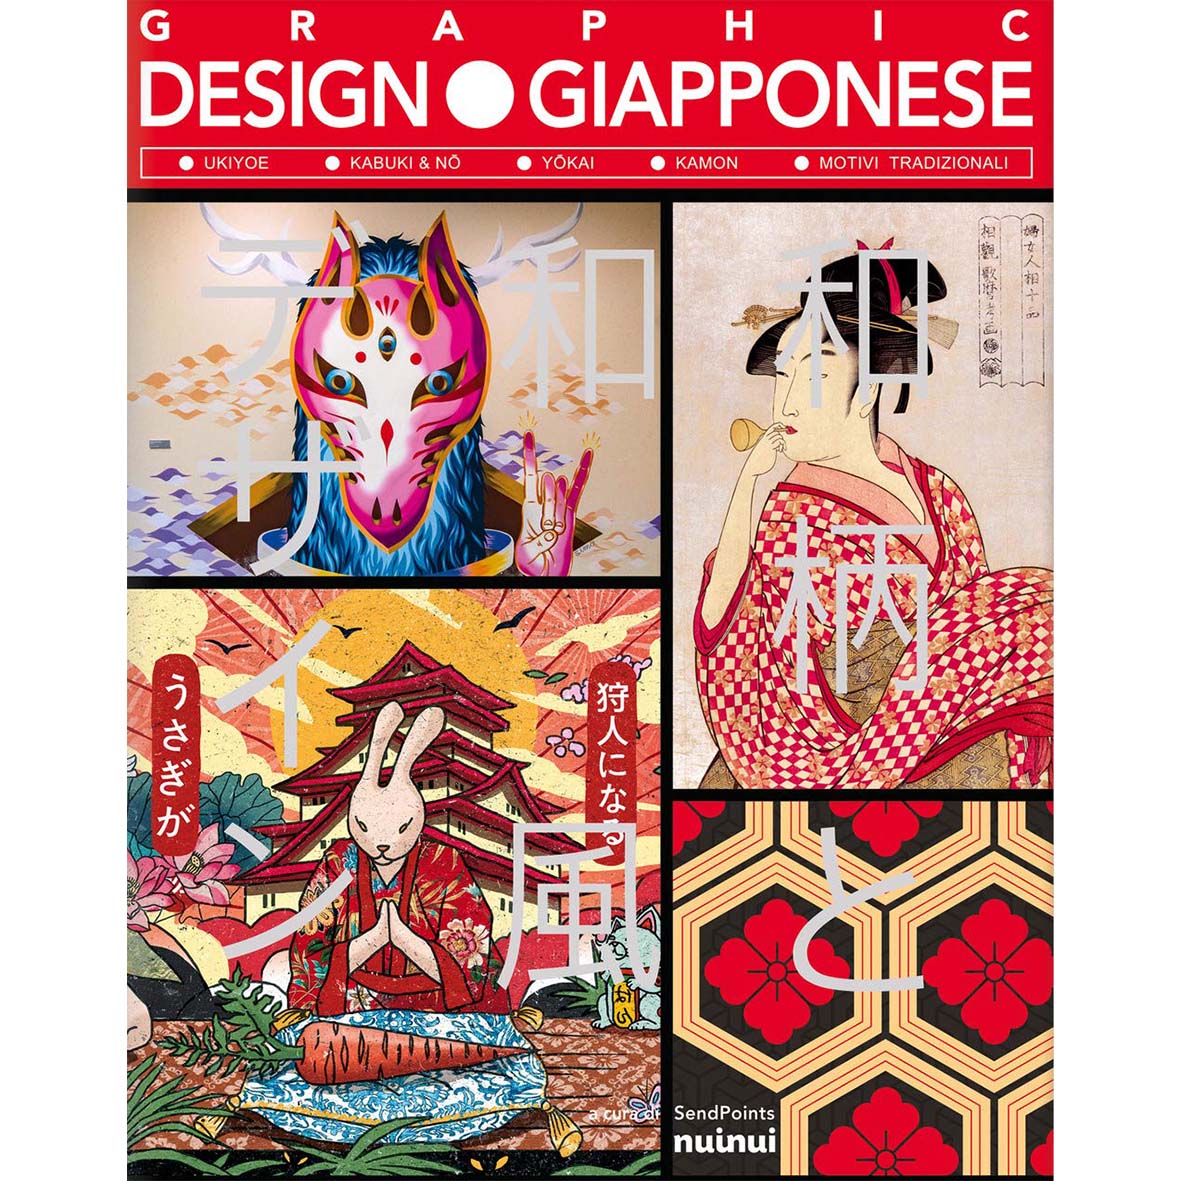 Graphic design giapponese - nuova edizione